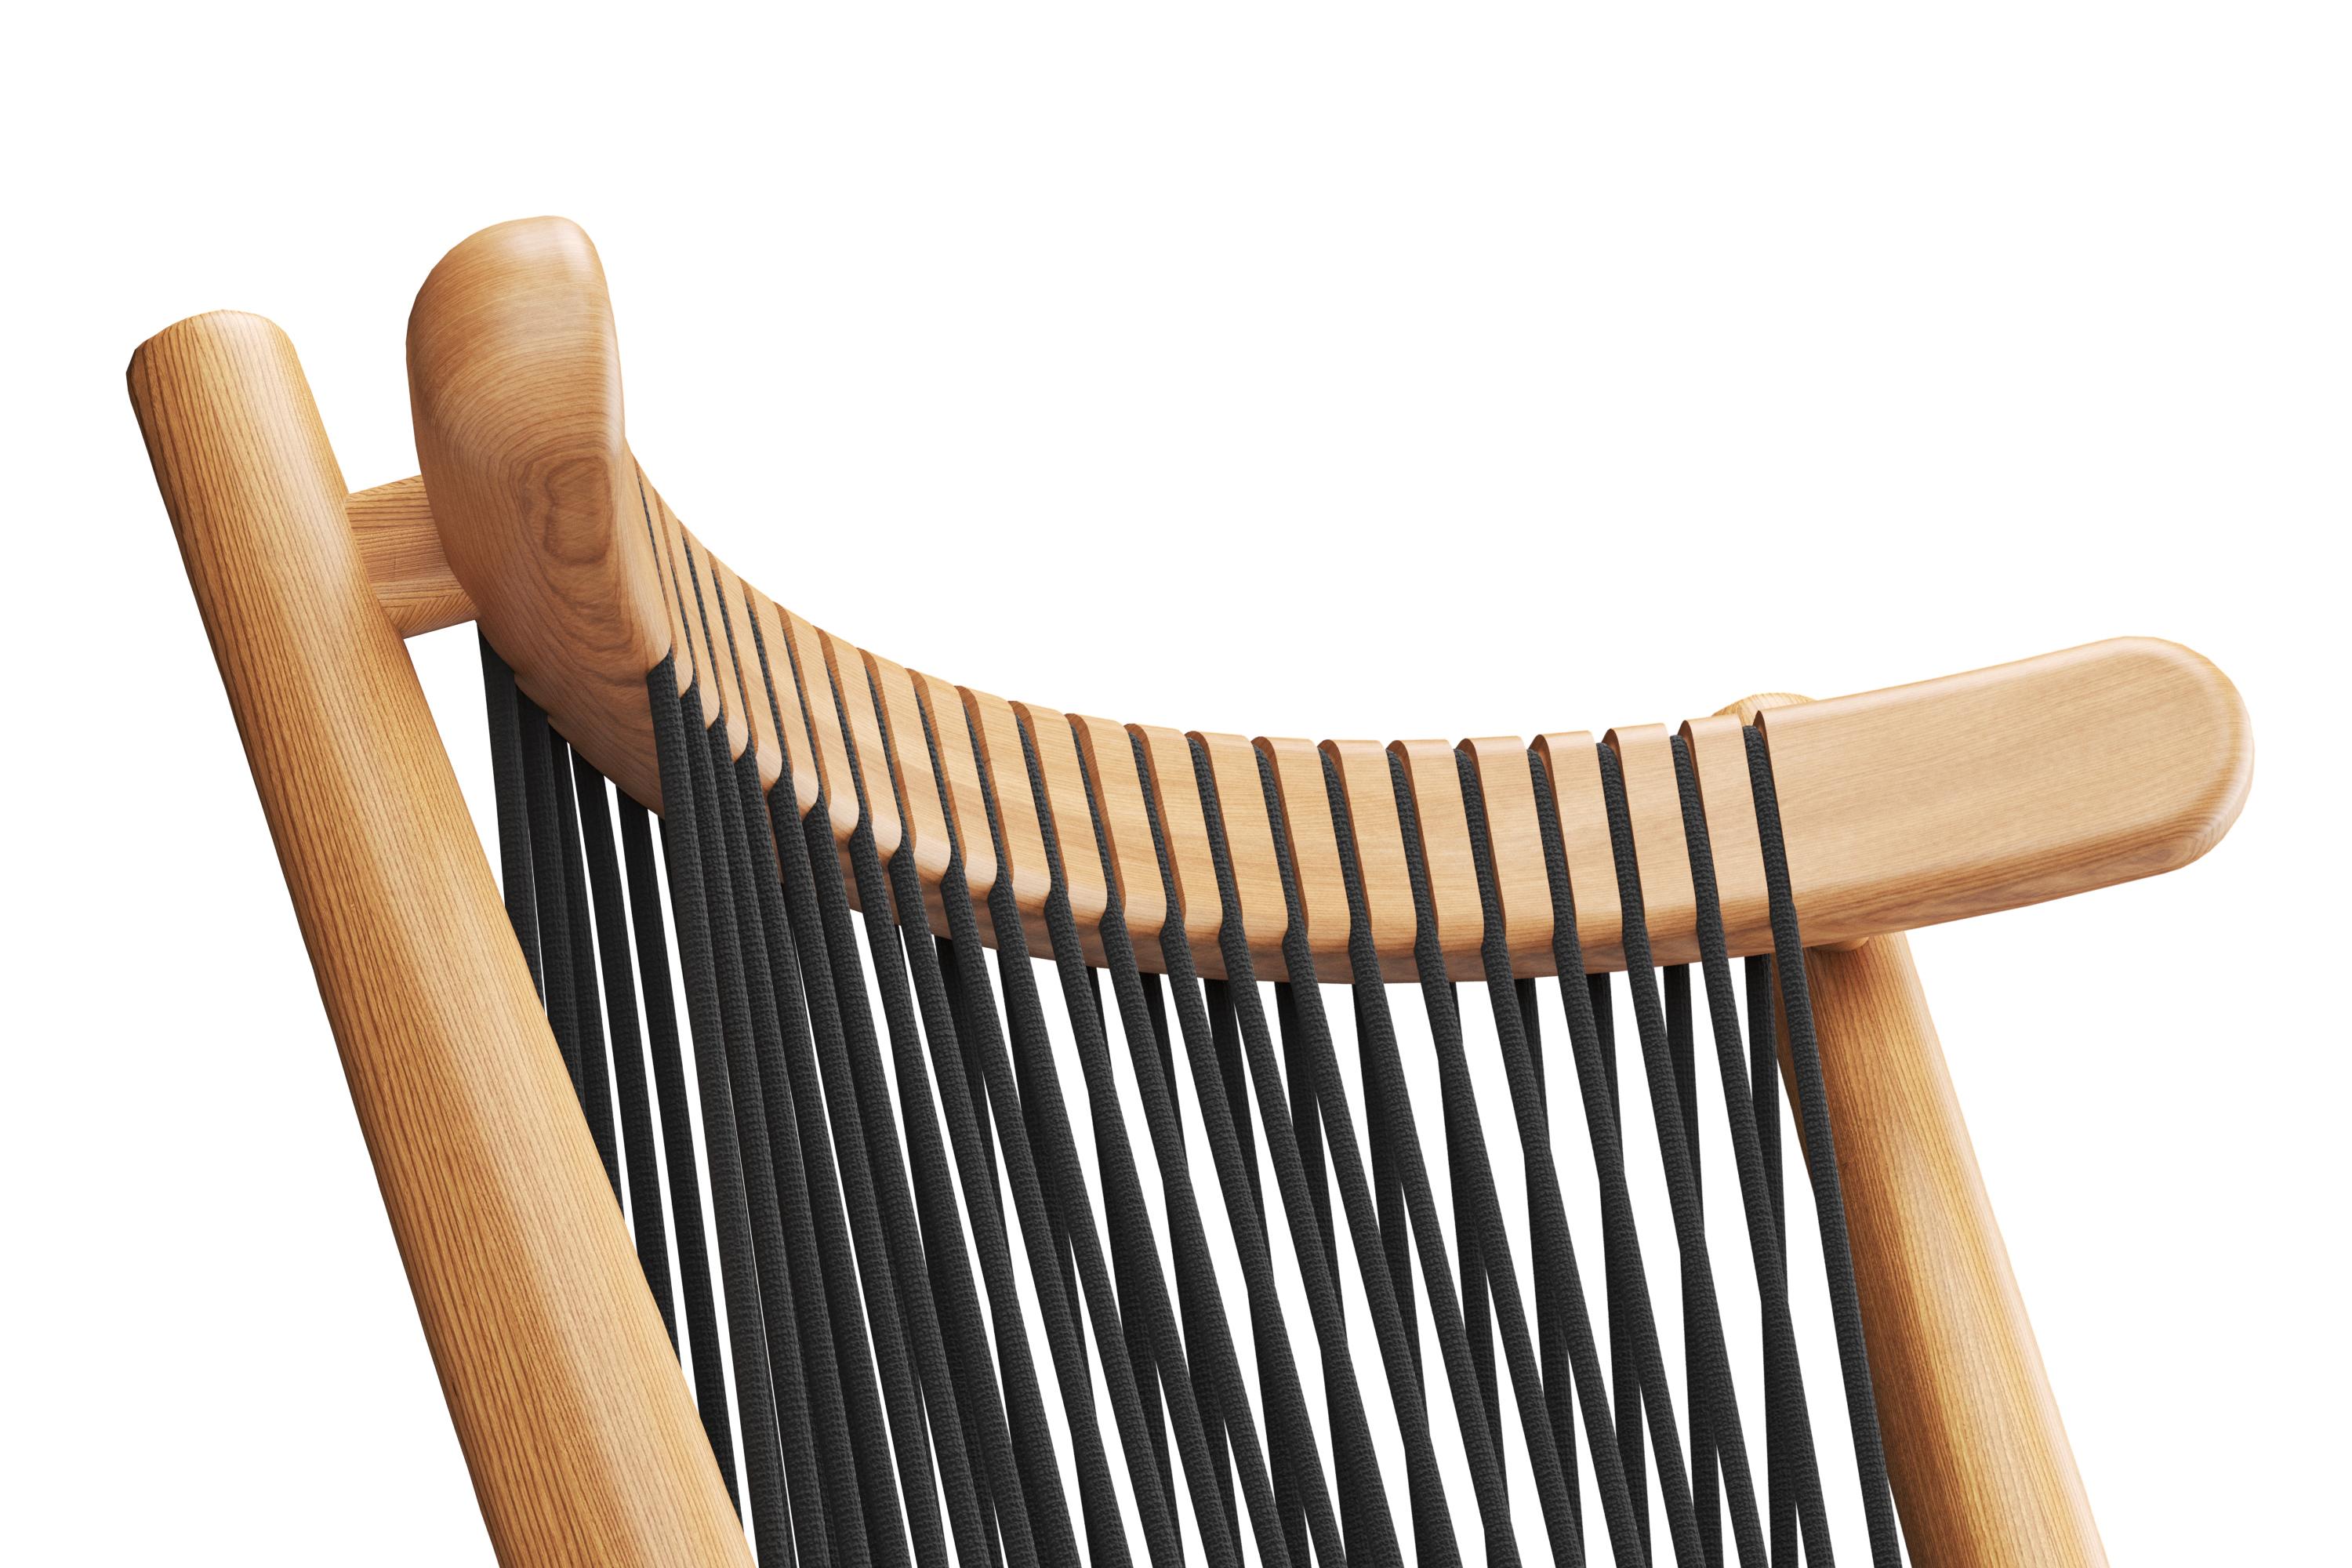 La chaise Loom a été inspirée par les métiers à tisser traditionnels en bois d'Oaxaca au Mexique. Le cadre est en chêne massif et la Corde est en polypropylène. Les chaises sont poncées et finies à la main, un processus qui prend environ une journée